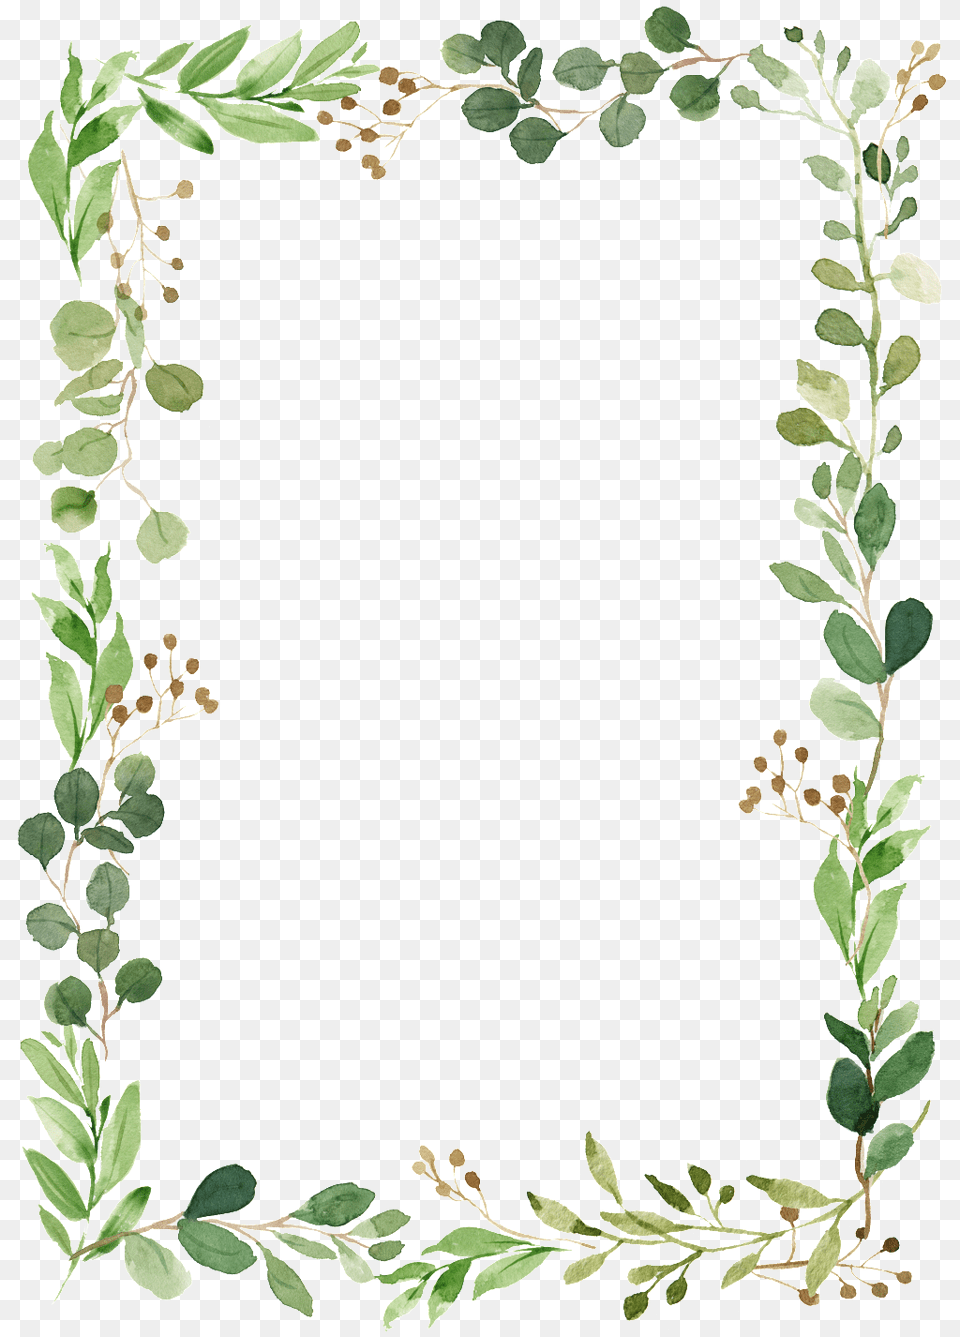 Leaf Border Background Foliage Border, Art, Floral Design, Graphics, Pattern Free Transparent Png